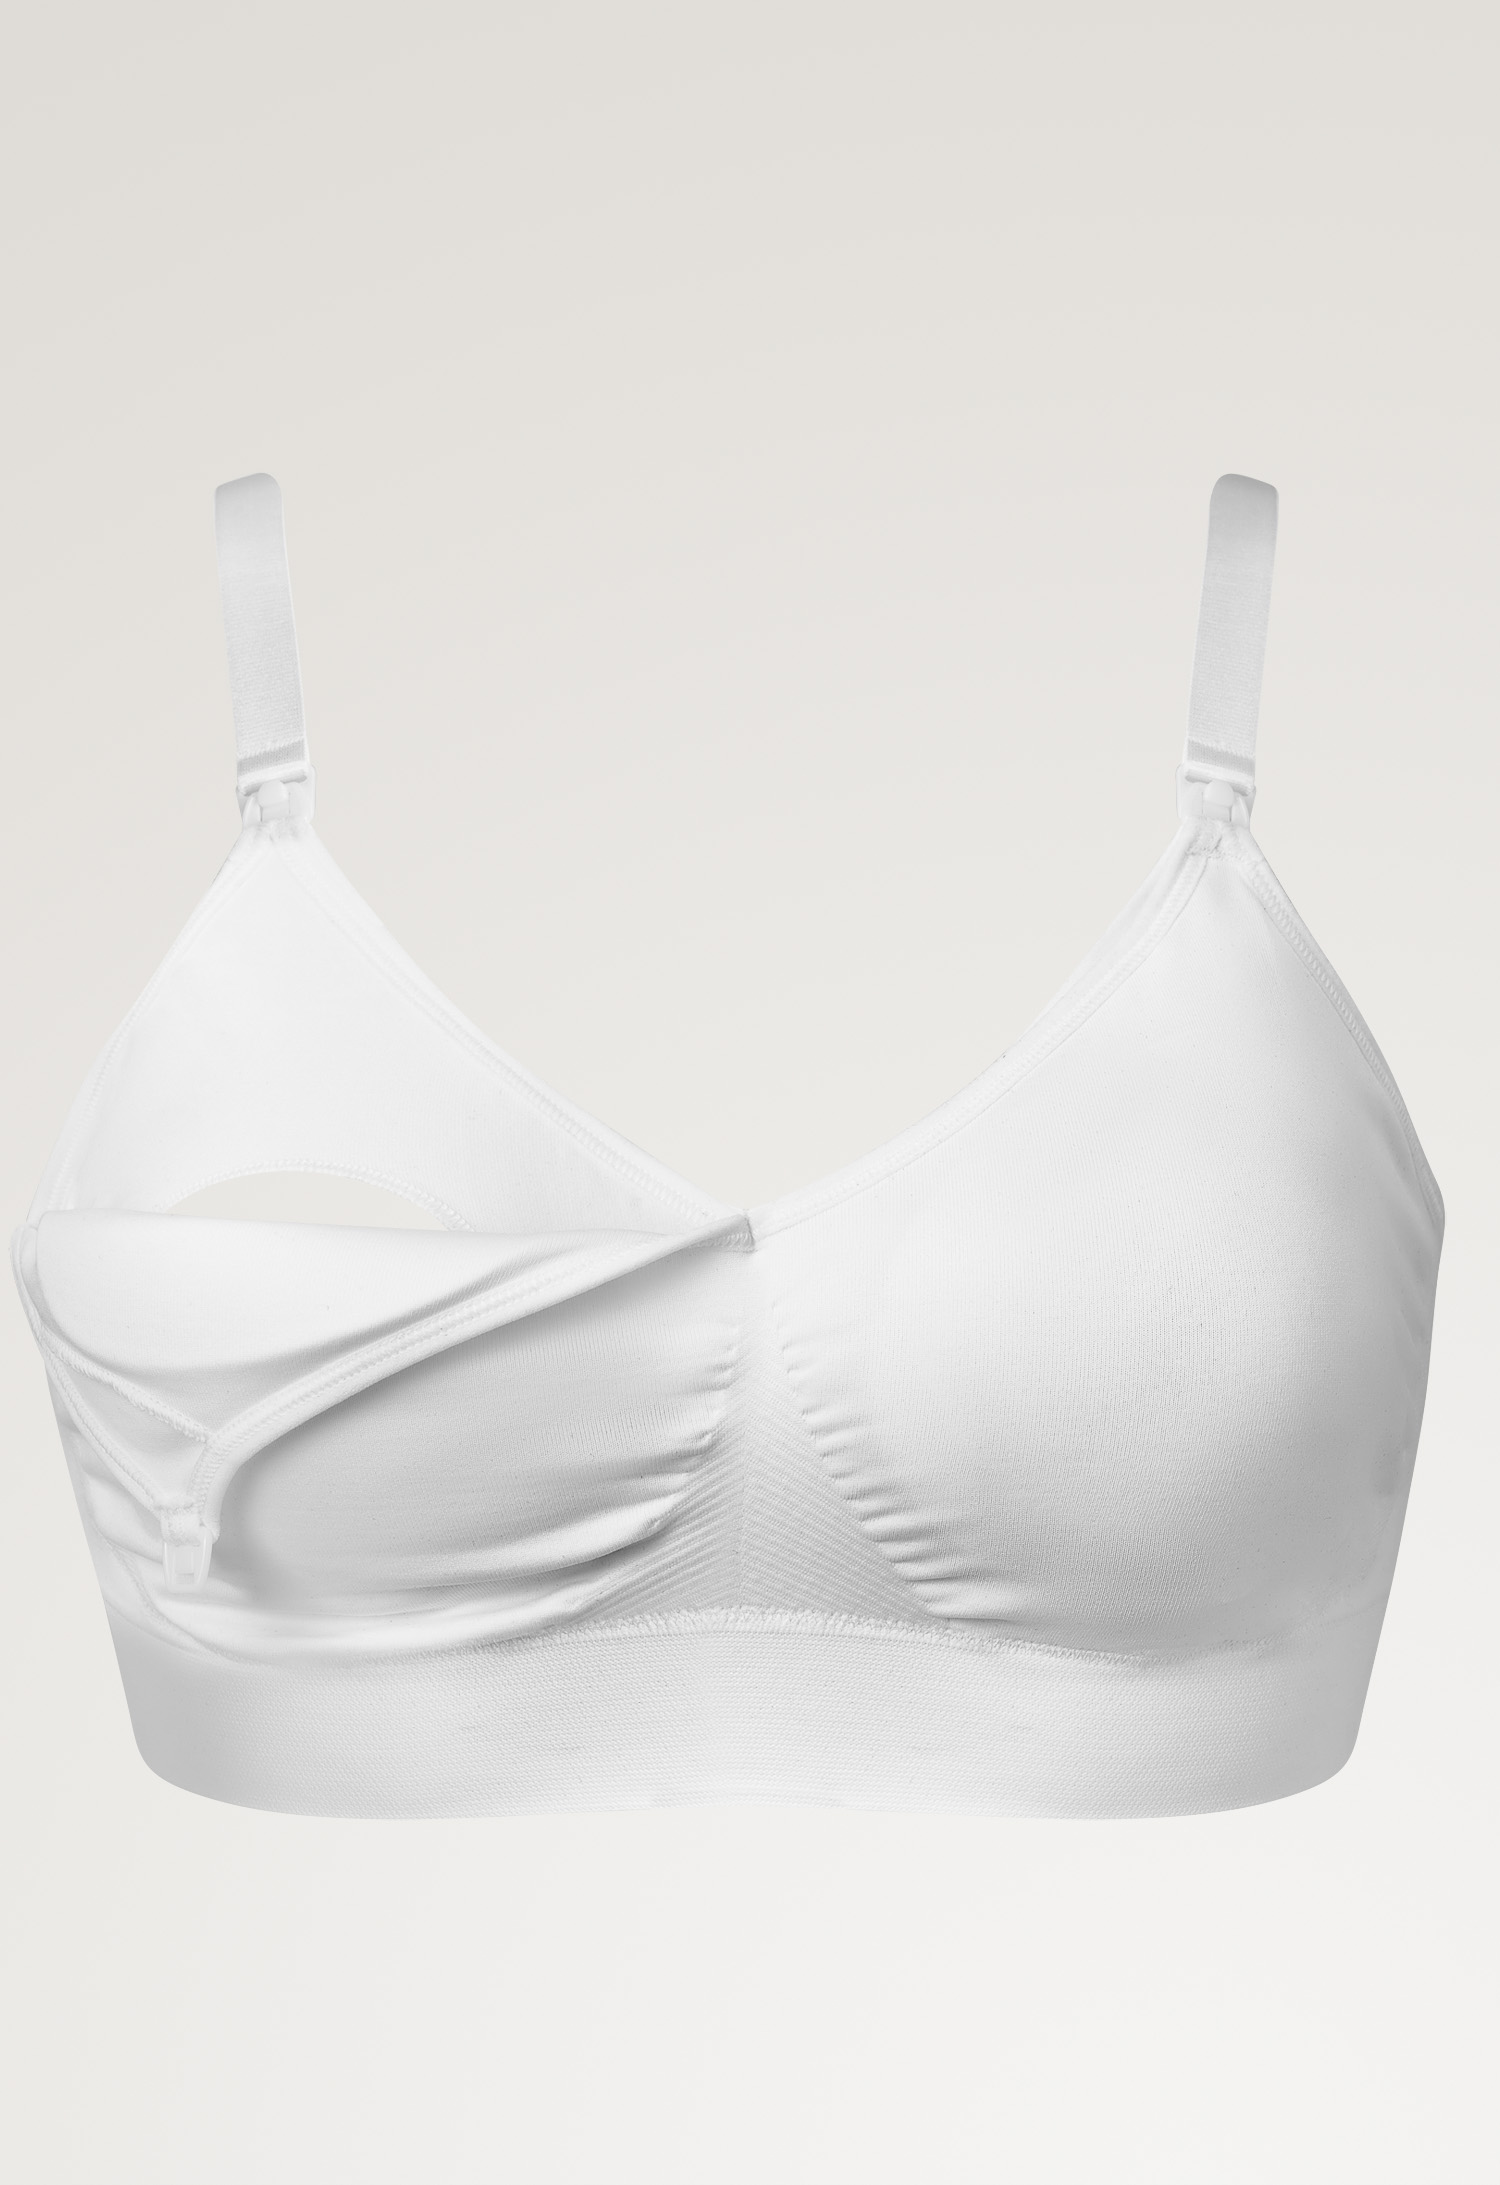 Fast Food T-shirt bra , White XL (5) - Maternity underwear / Nursing underwear